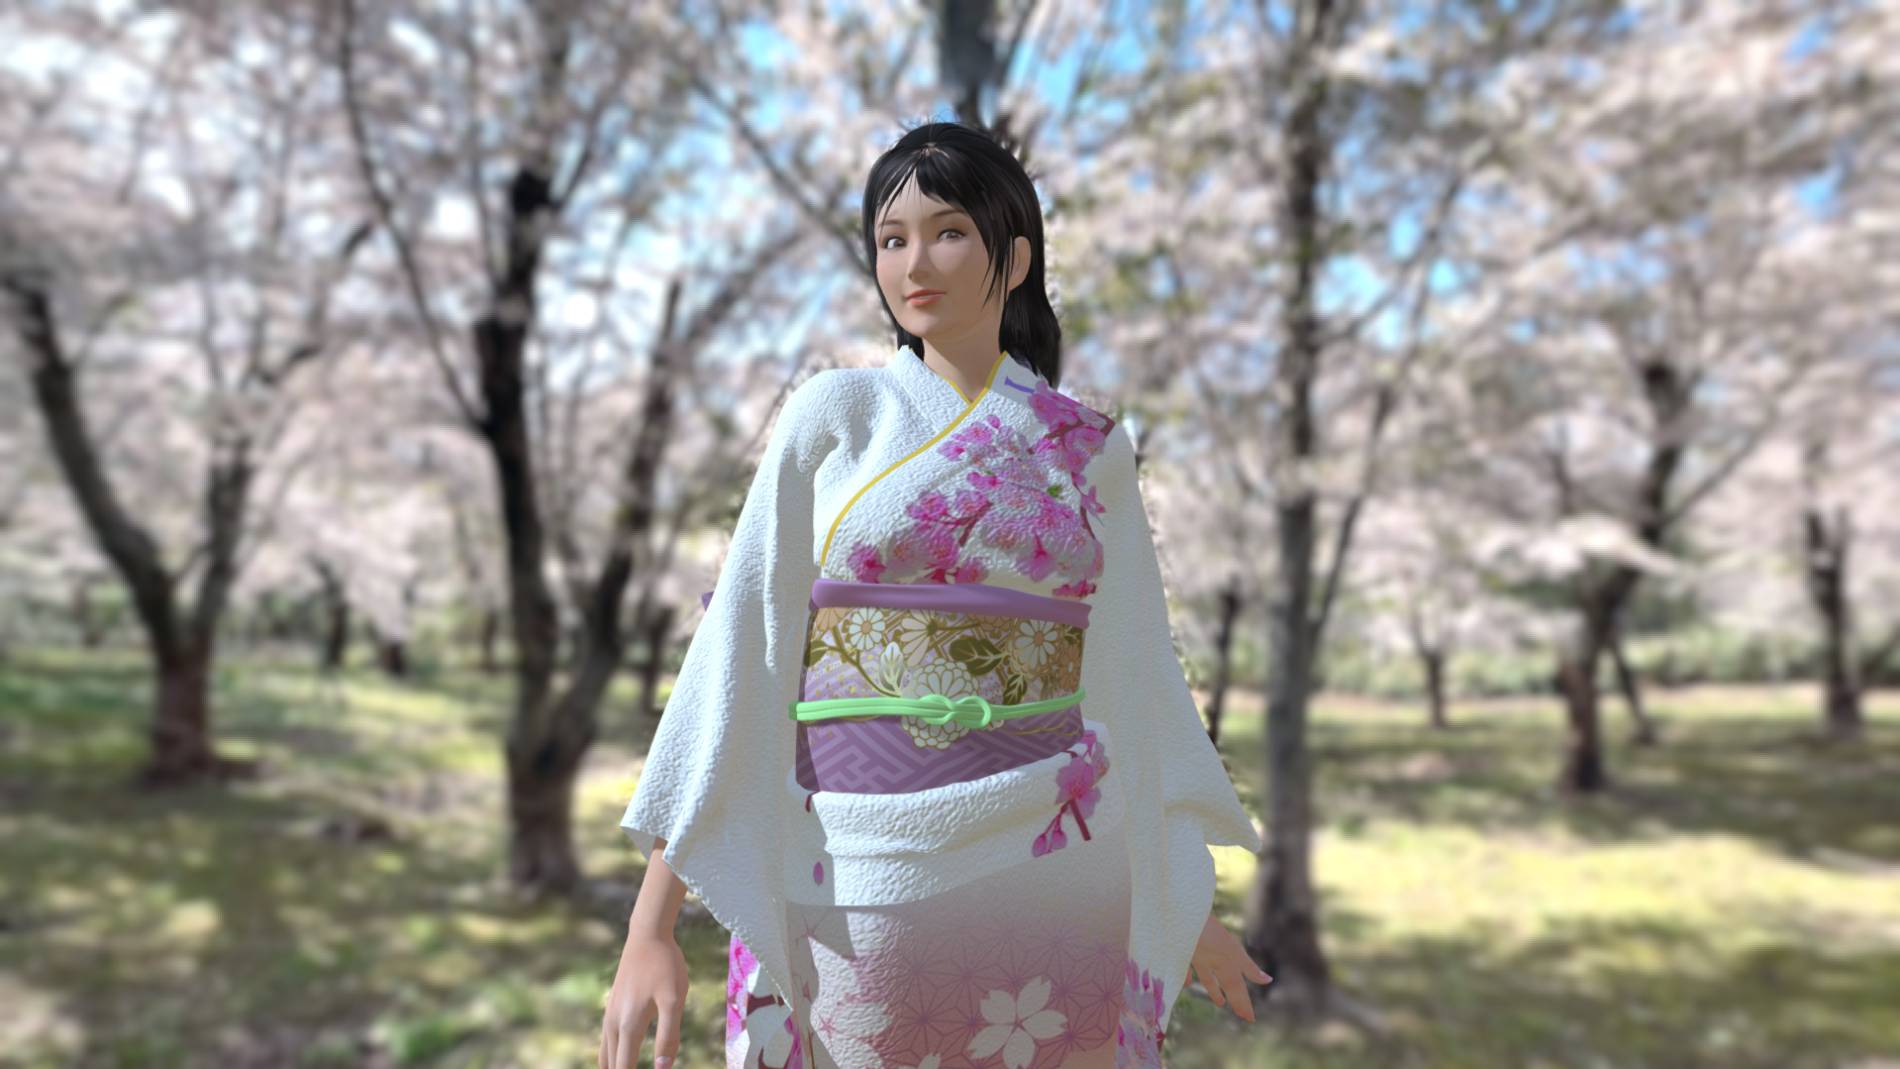 札幌近郊 桜の名所 石狩市 戸田墓苑 3Dモデル 360VR